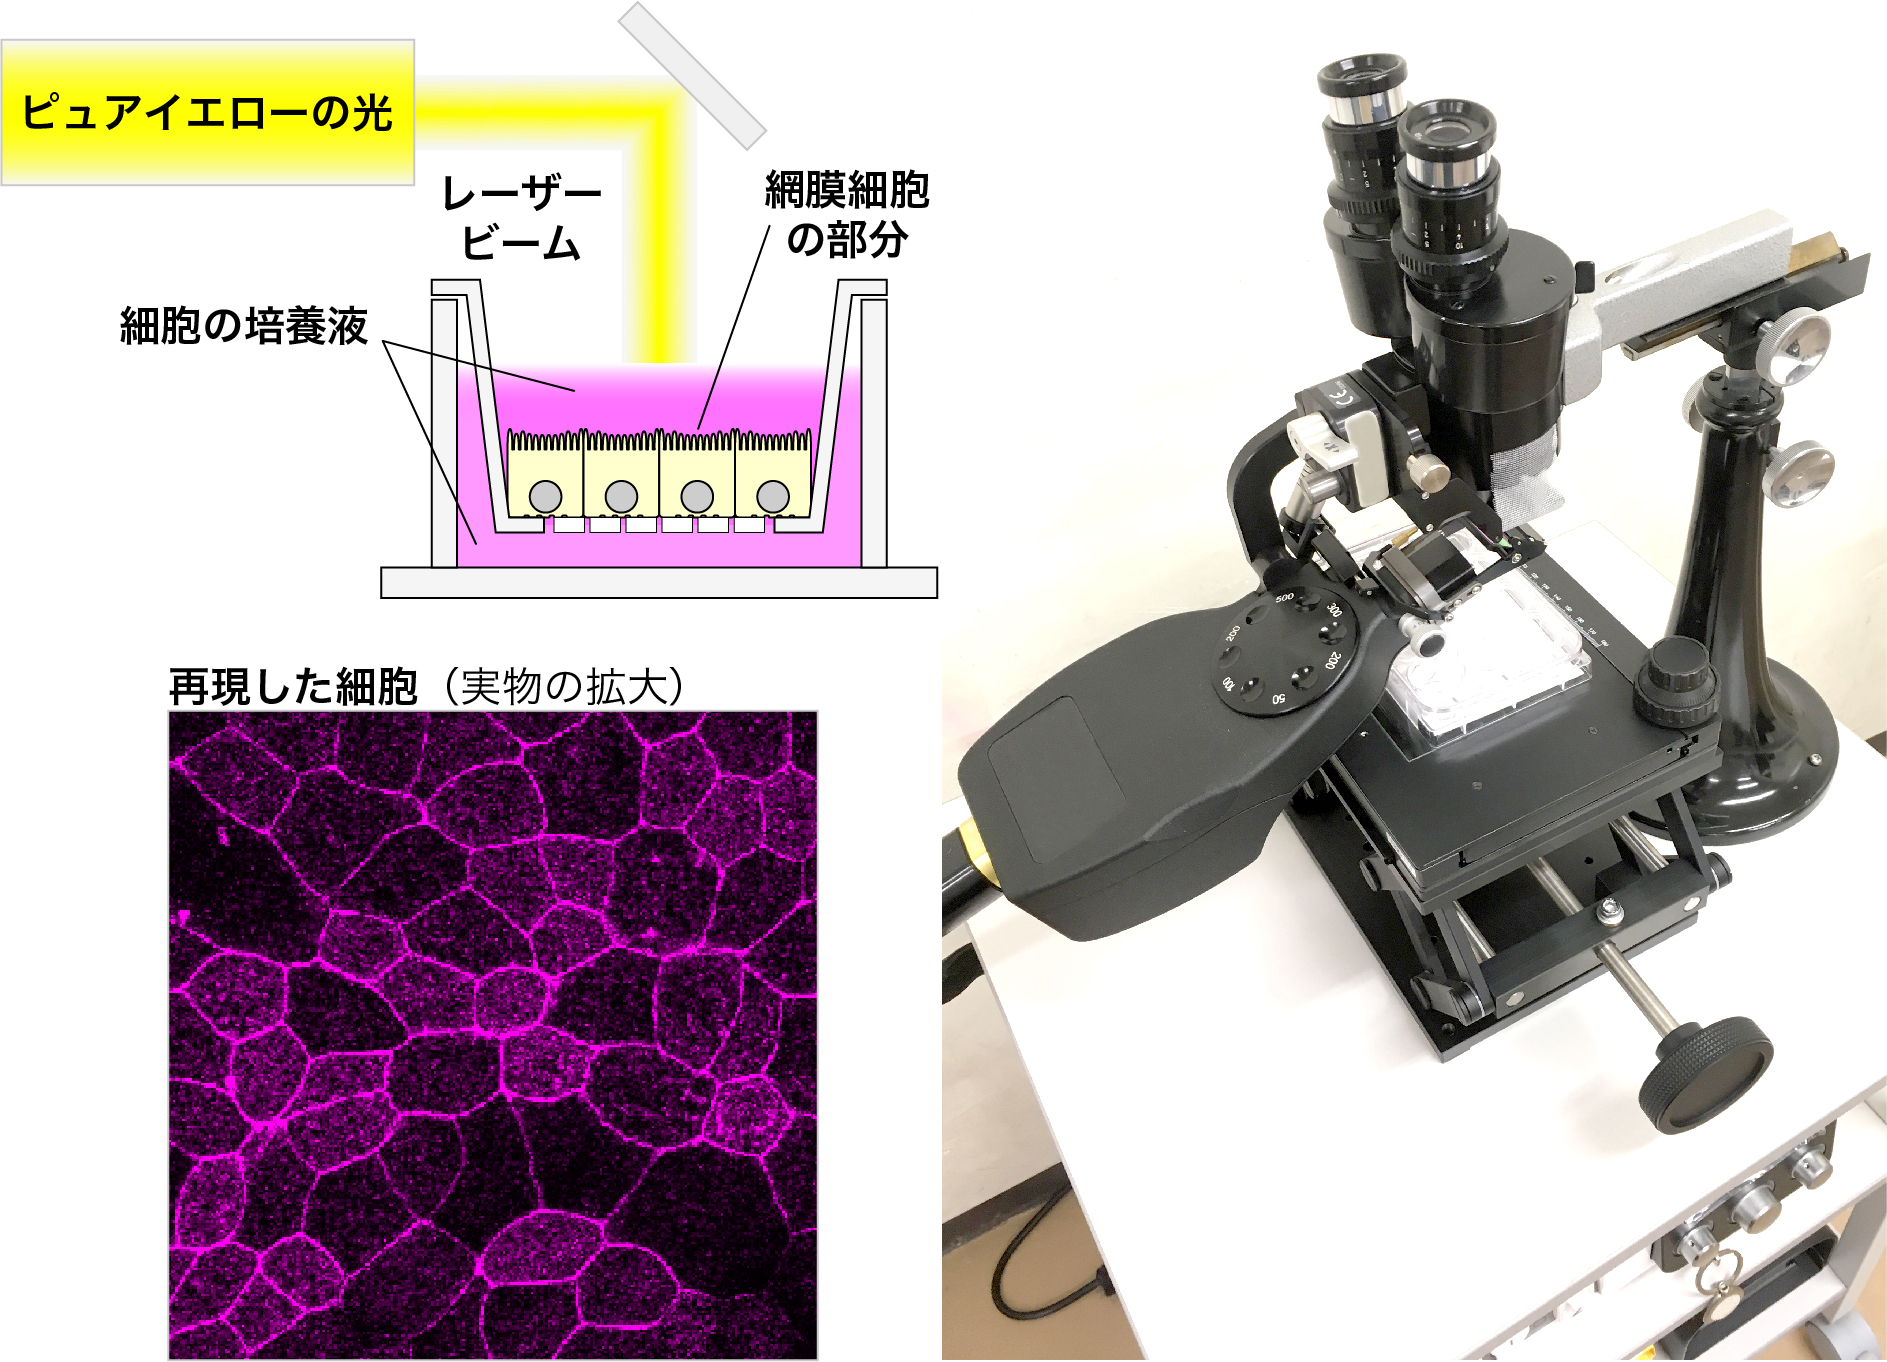 研究のために組み上げたレーザー照射実験系とiPS細胞から変化させた網膜細胞の部分